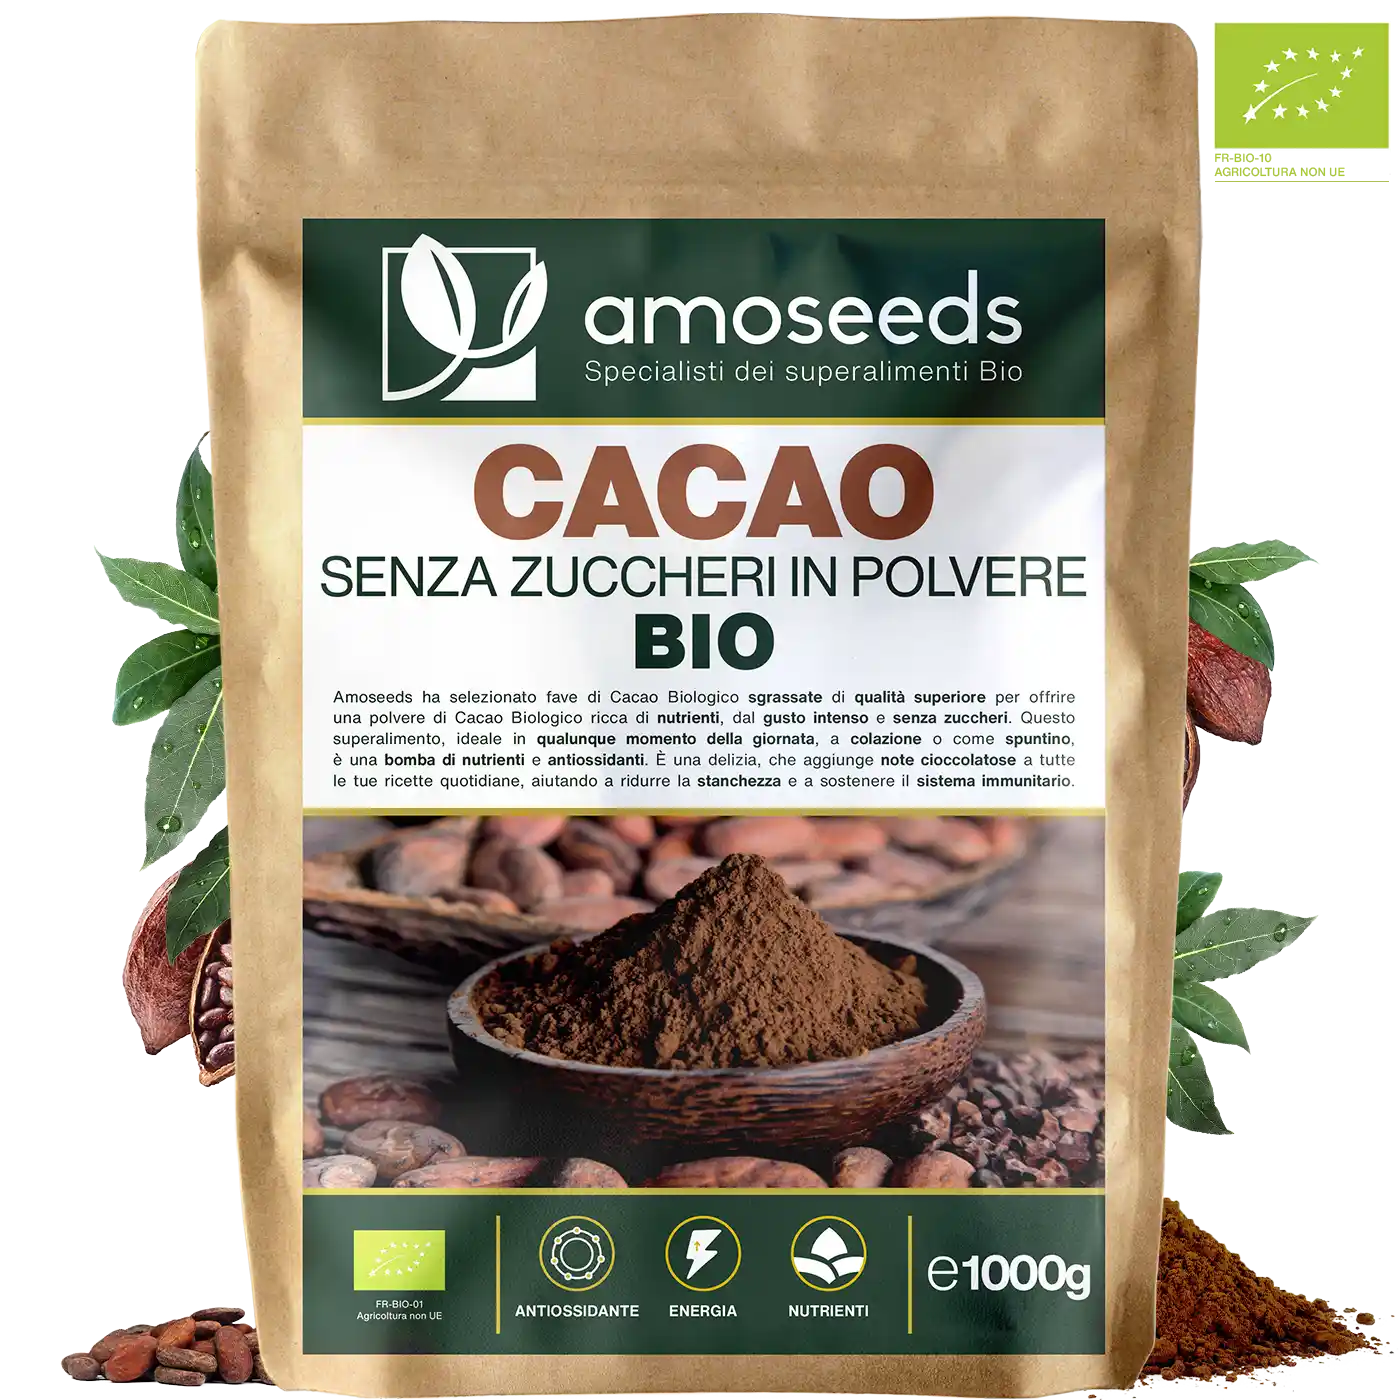 Cacao Senza Zuccheri Bio amoseeds specialisti dei superalimenti bio